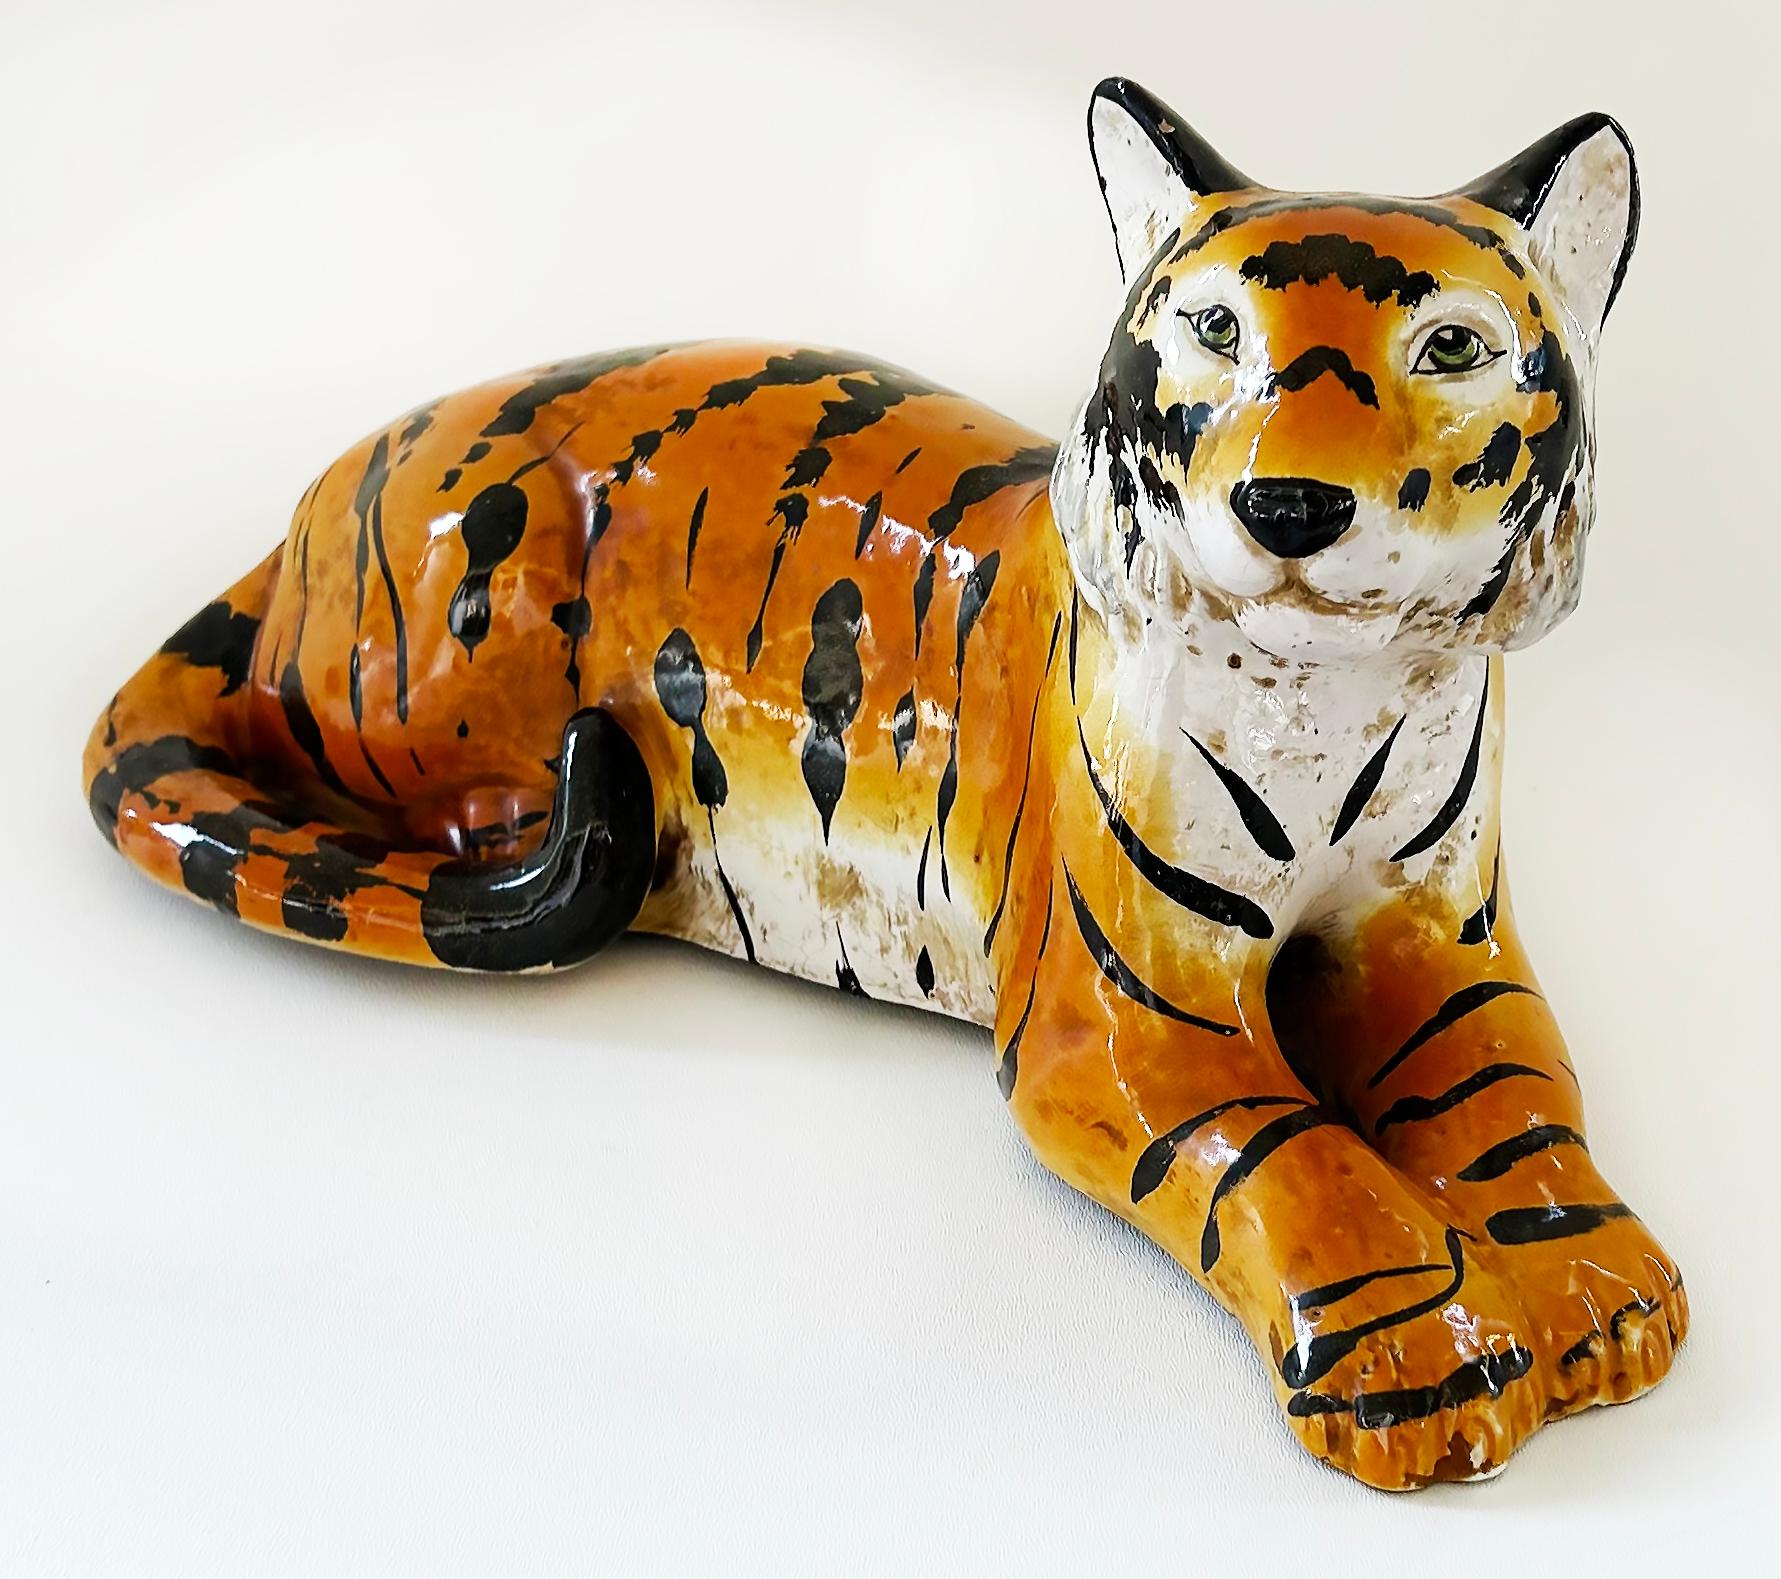 Italienische glasierte Keramikskulptur eines Tigers in Ruhestellung, CIRCA 1960er Jahre

Zum Verkauf angeboten wird eine italienische glasierte Keramikskulptur eines Tigers in Ruhe aus der Mitte des späten 20. Jahrhunderts.  Der Tiger ist